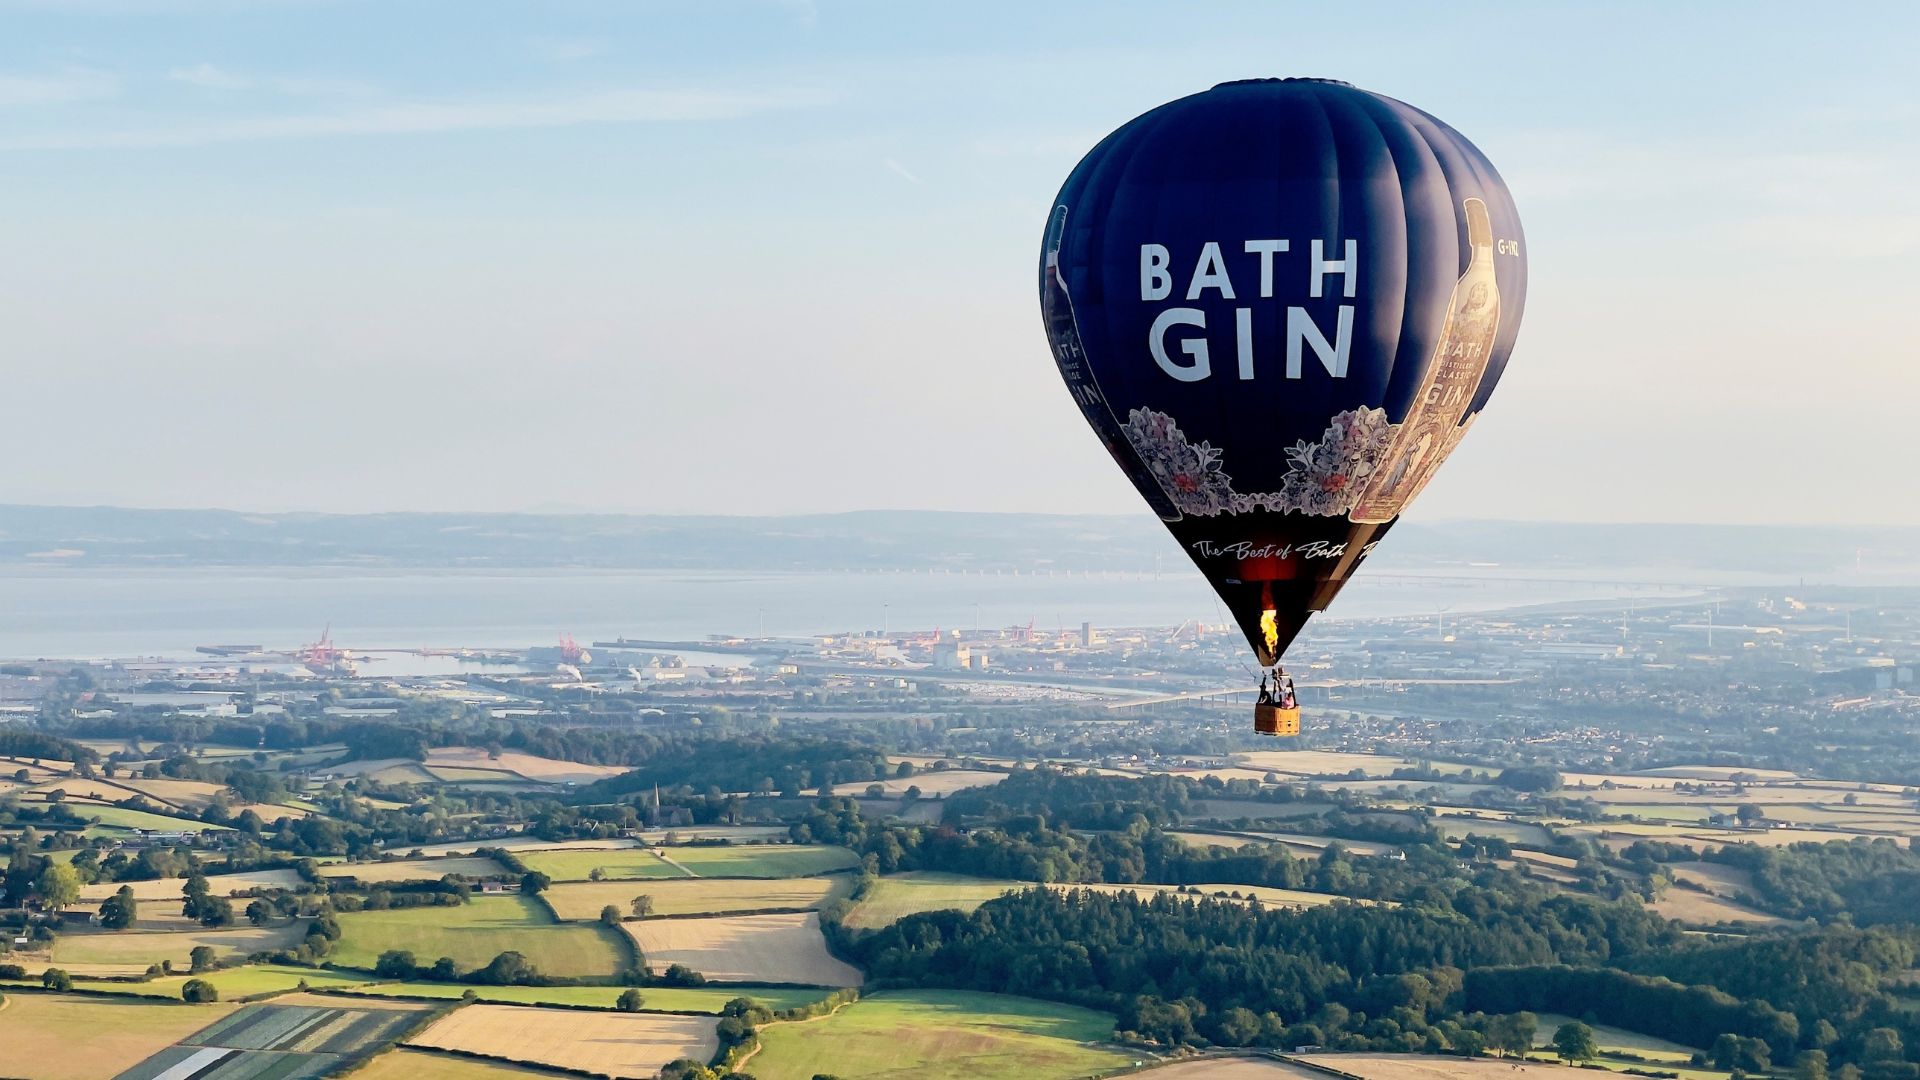 Hot air balloon flying over Bath